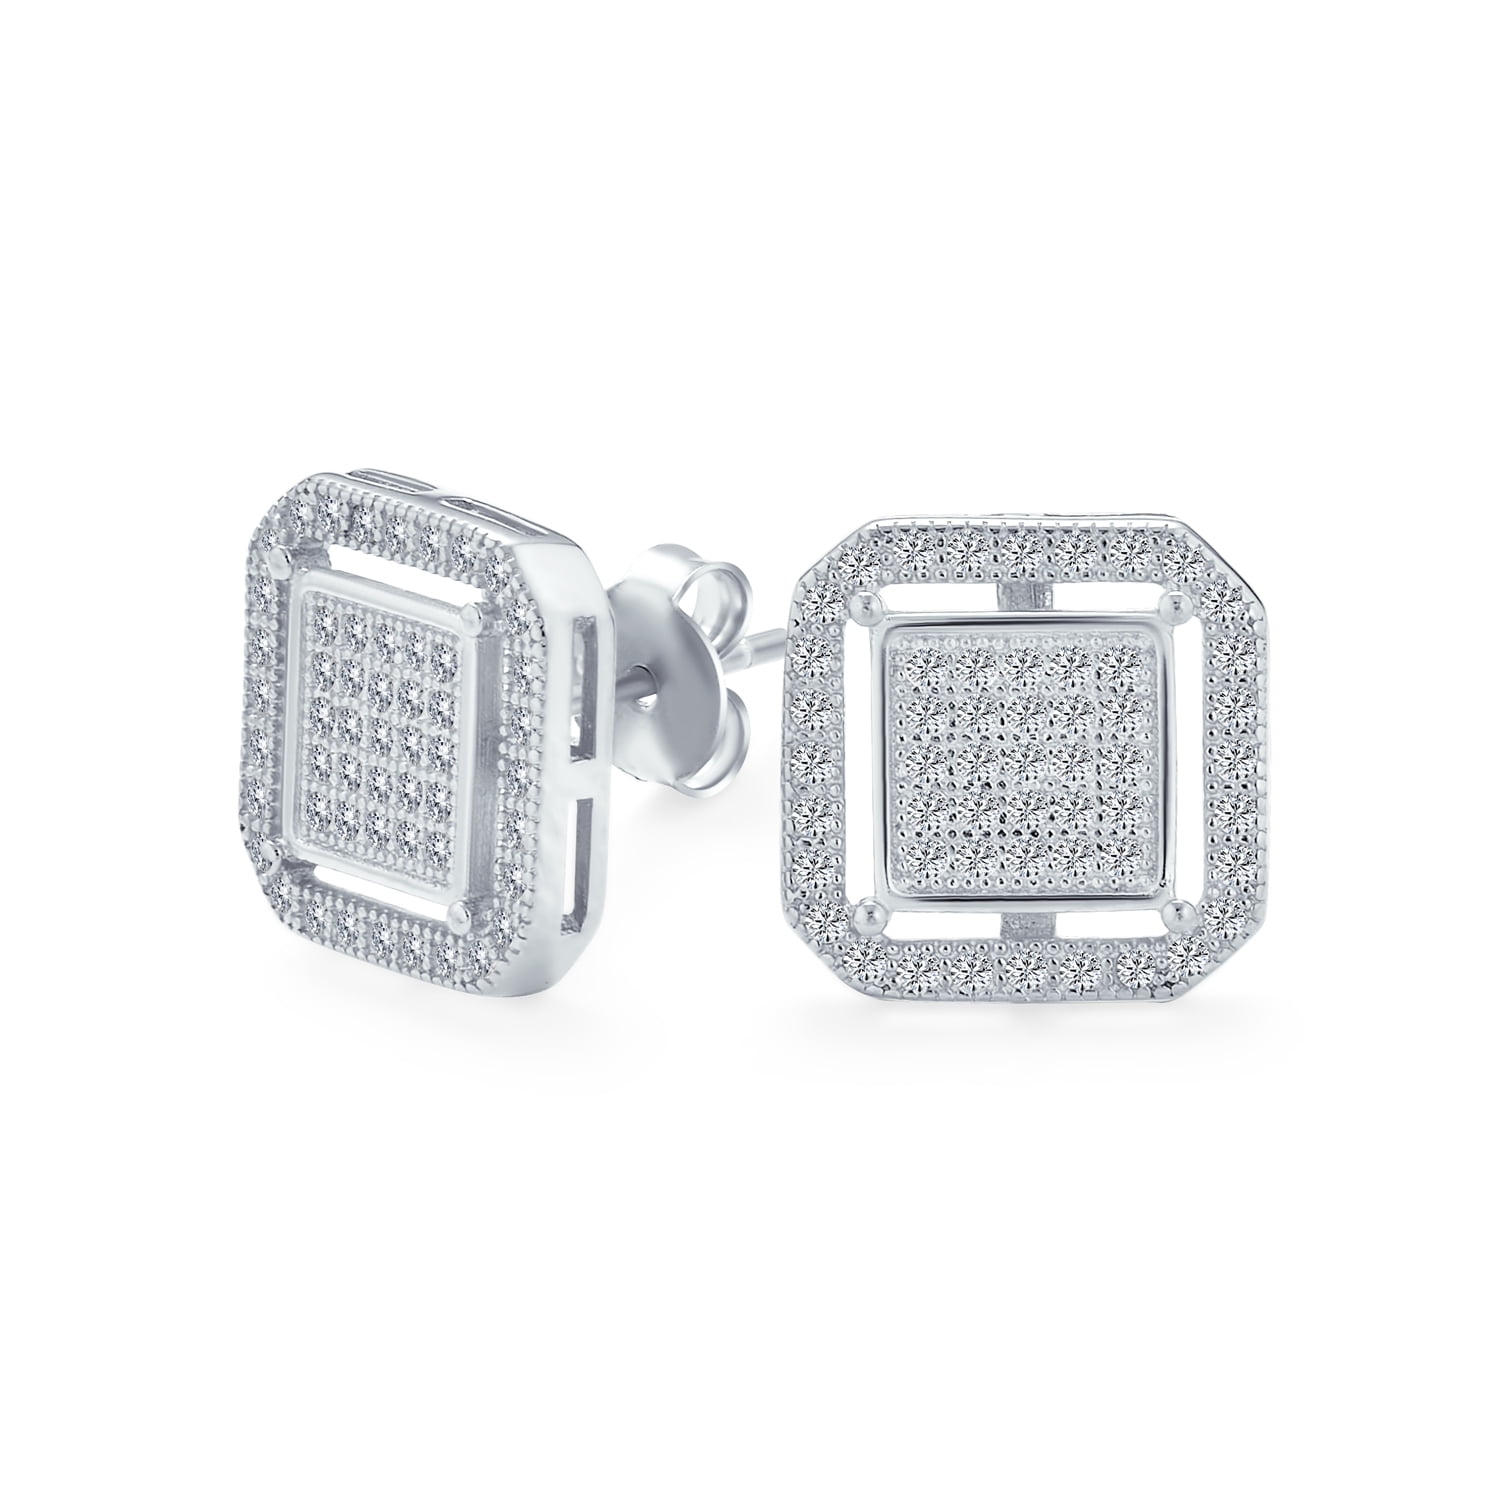 Glitzs Jewels Sterling Silver Cubic Zirconia Wedding Set Ring 6mm